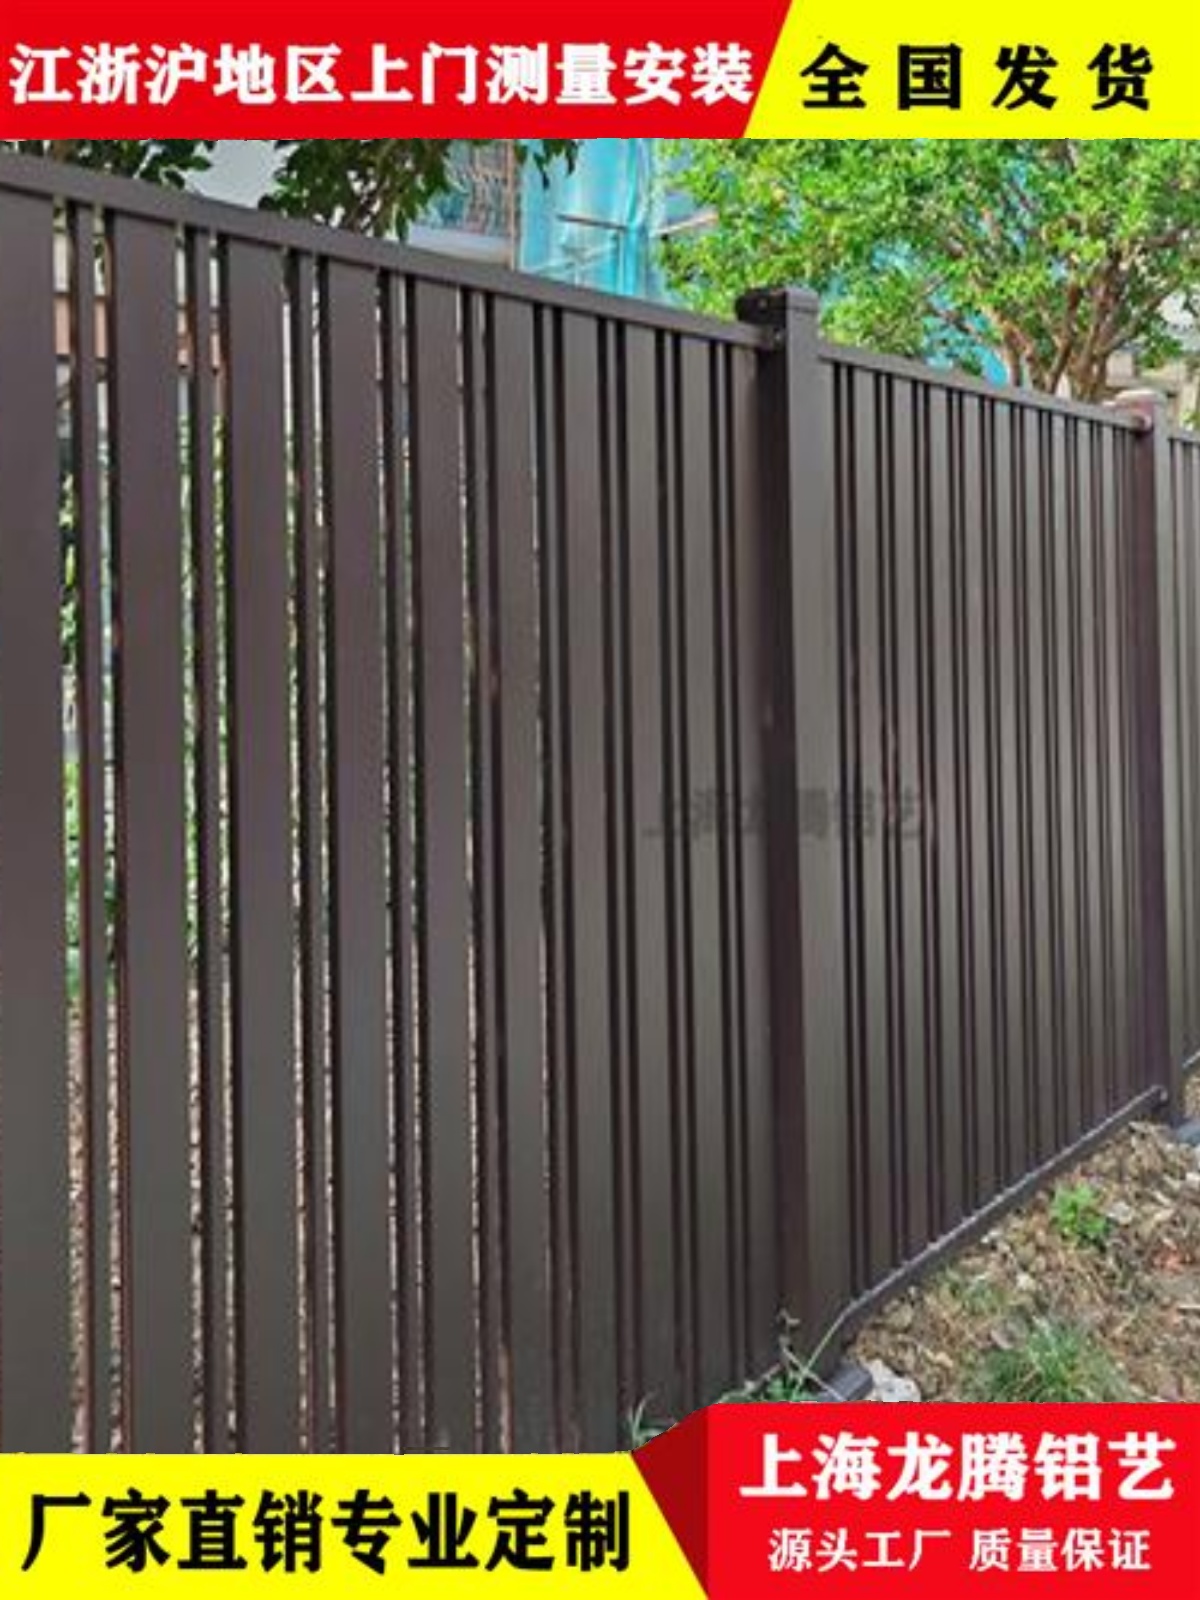 定制上海铁艺铝艺围栏护栏别墅庭院栏杆欧式围墙铁艺栅栏阳台栏杆